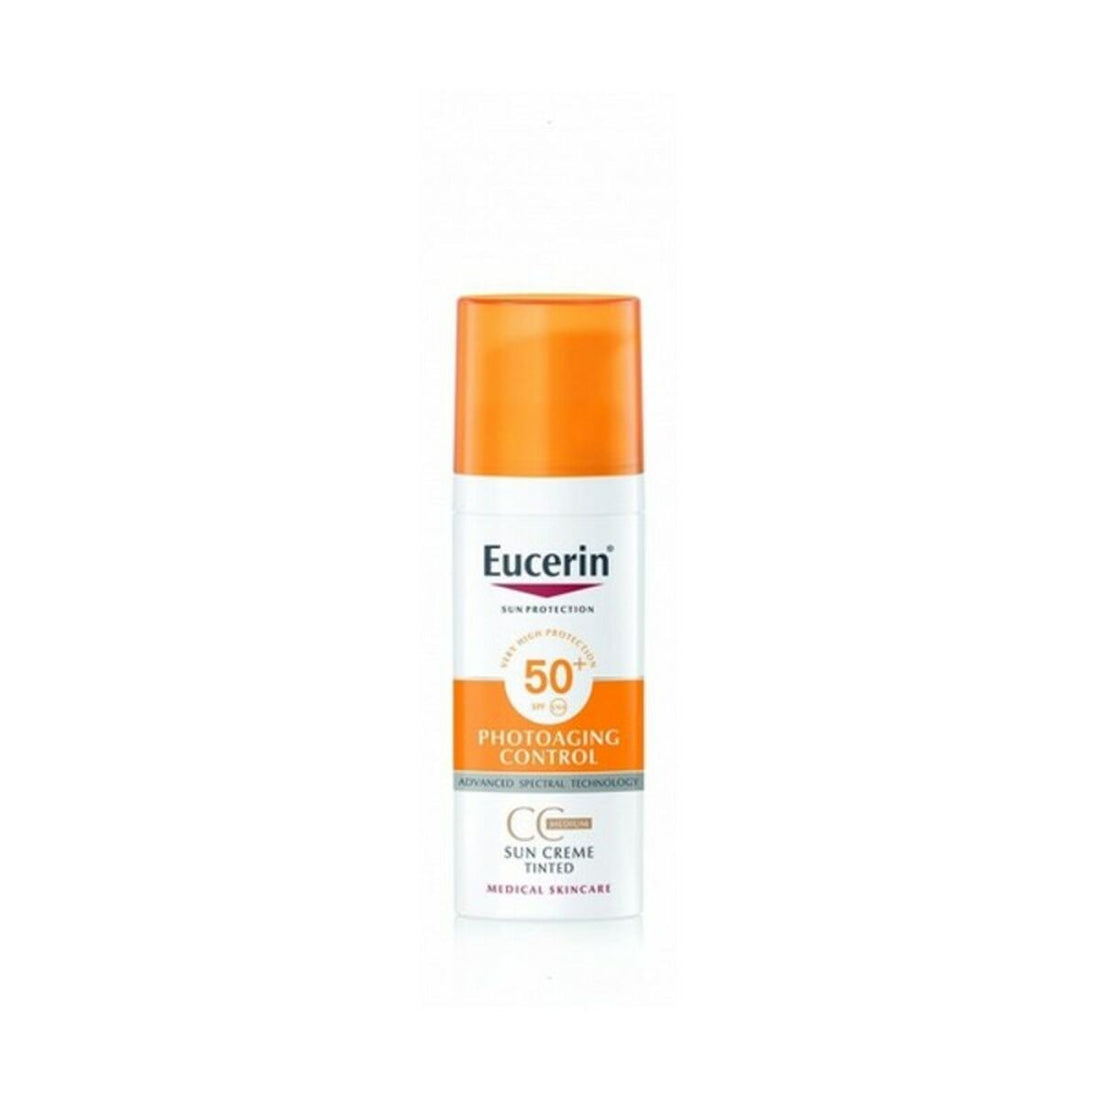 Sonnenschutzcreme für das Gesicht Photoaging Control Eucerin Spf 50+ (50 ml)